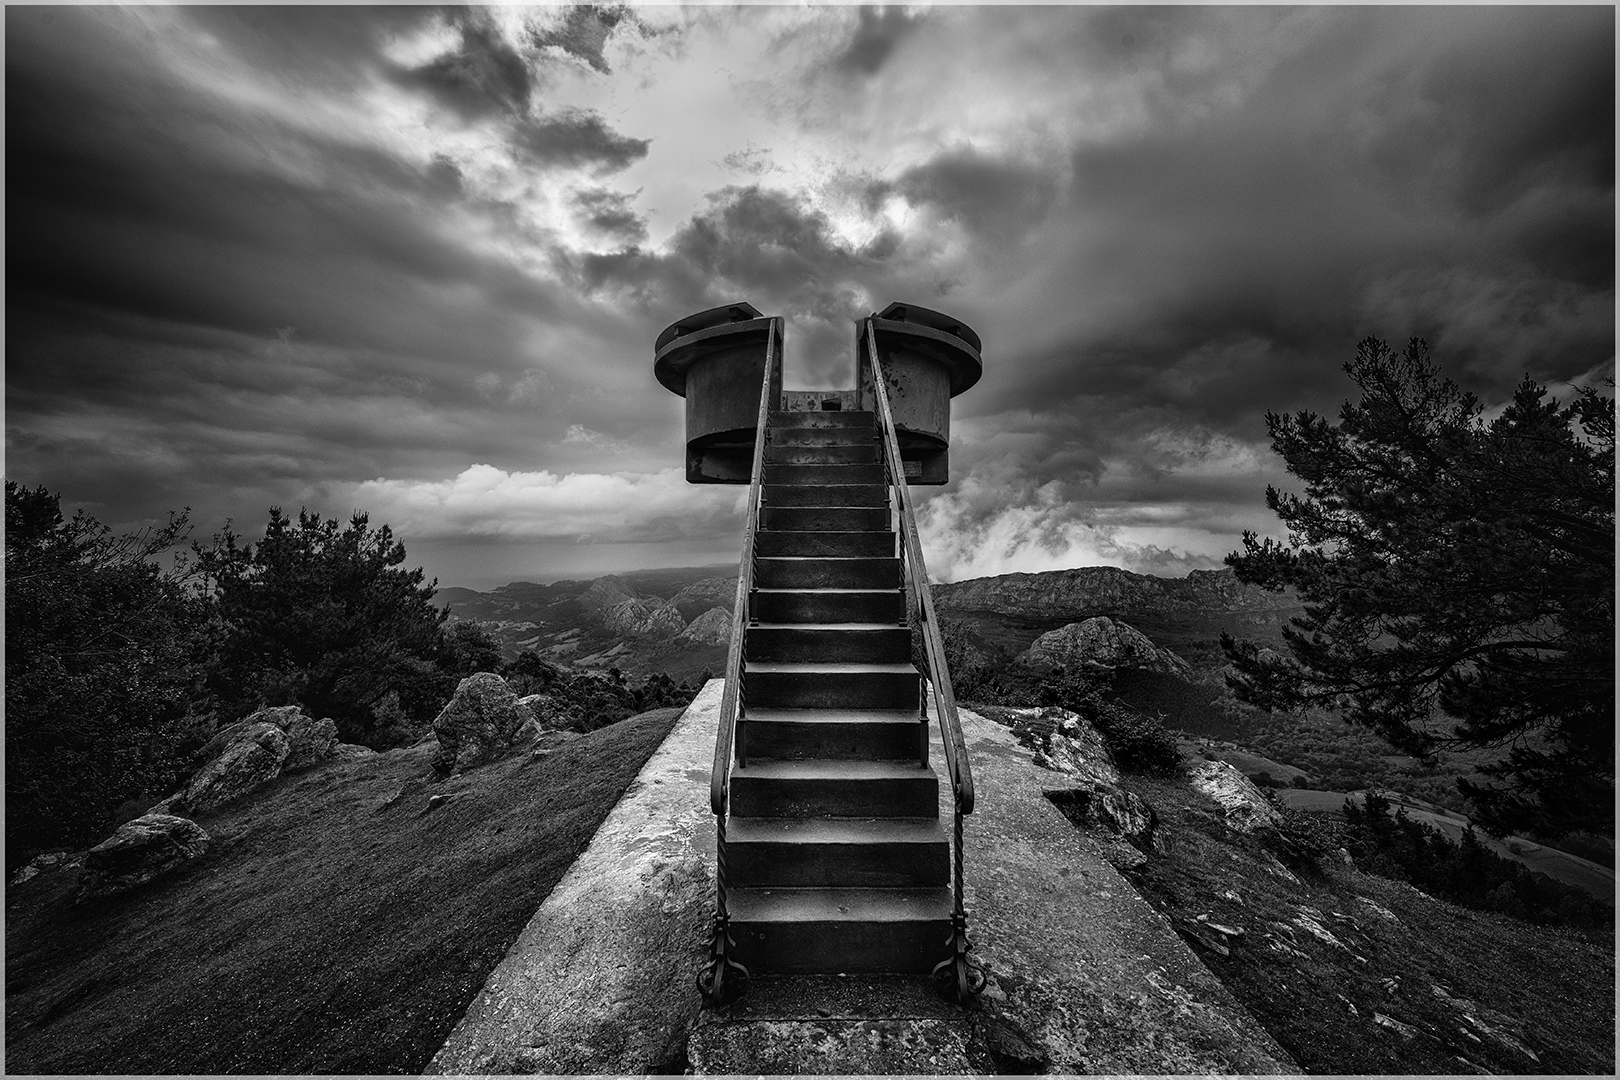 Stairway to heaven © Andre Vandenbossche